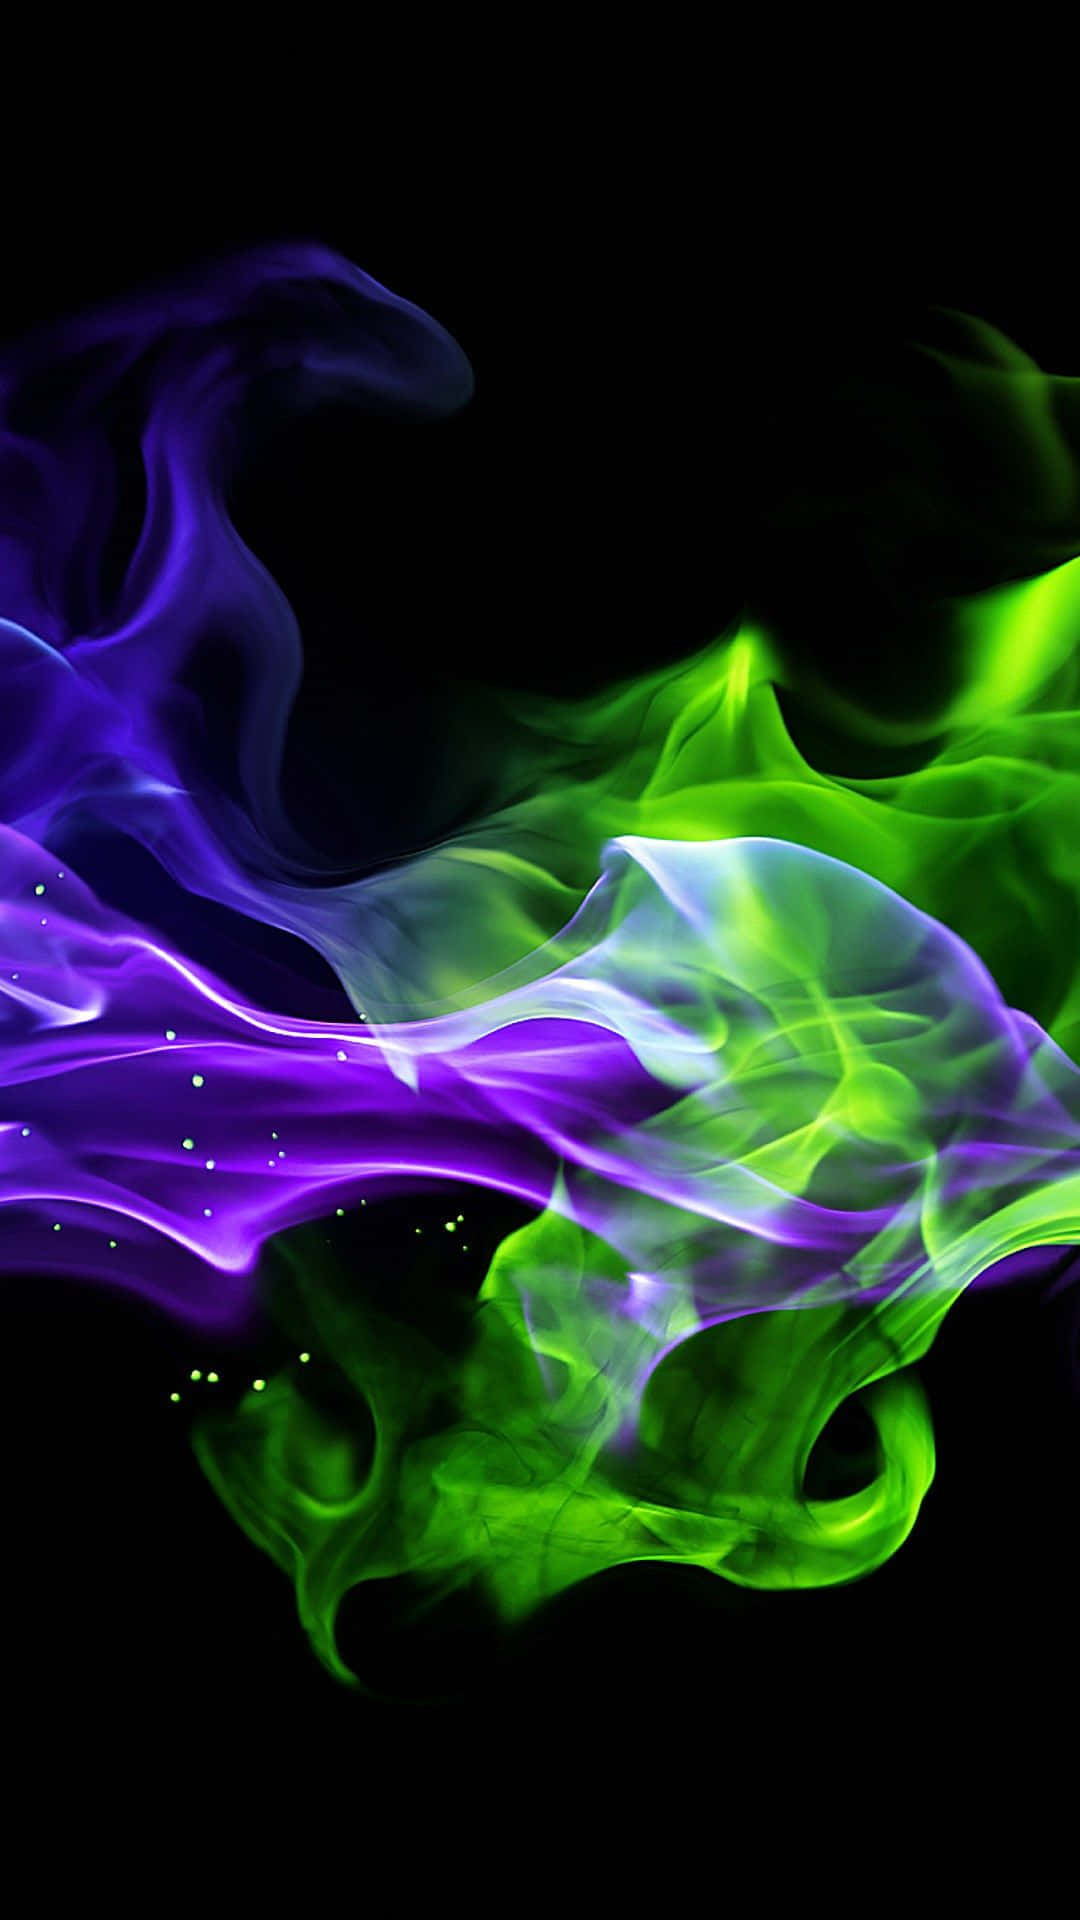 Lyse neon grønne og lilla farver mod en mørk baggrund skaber et afbalanceret og attraktivt billede. Wallpaper